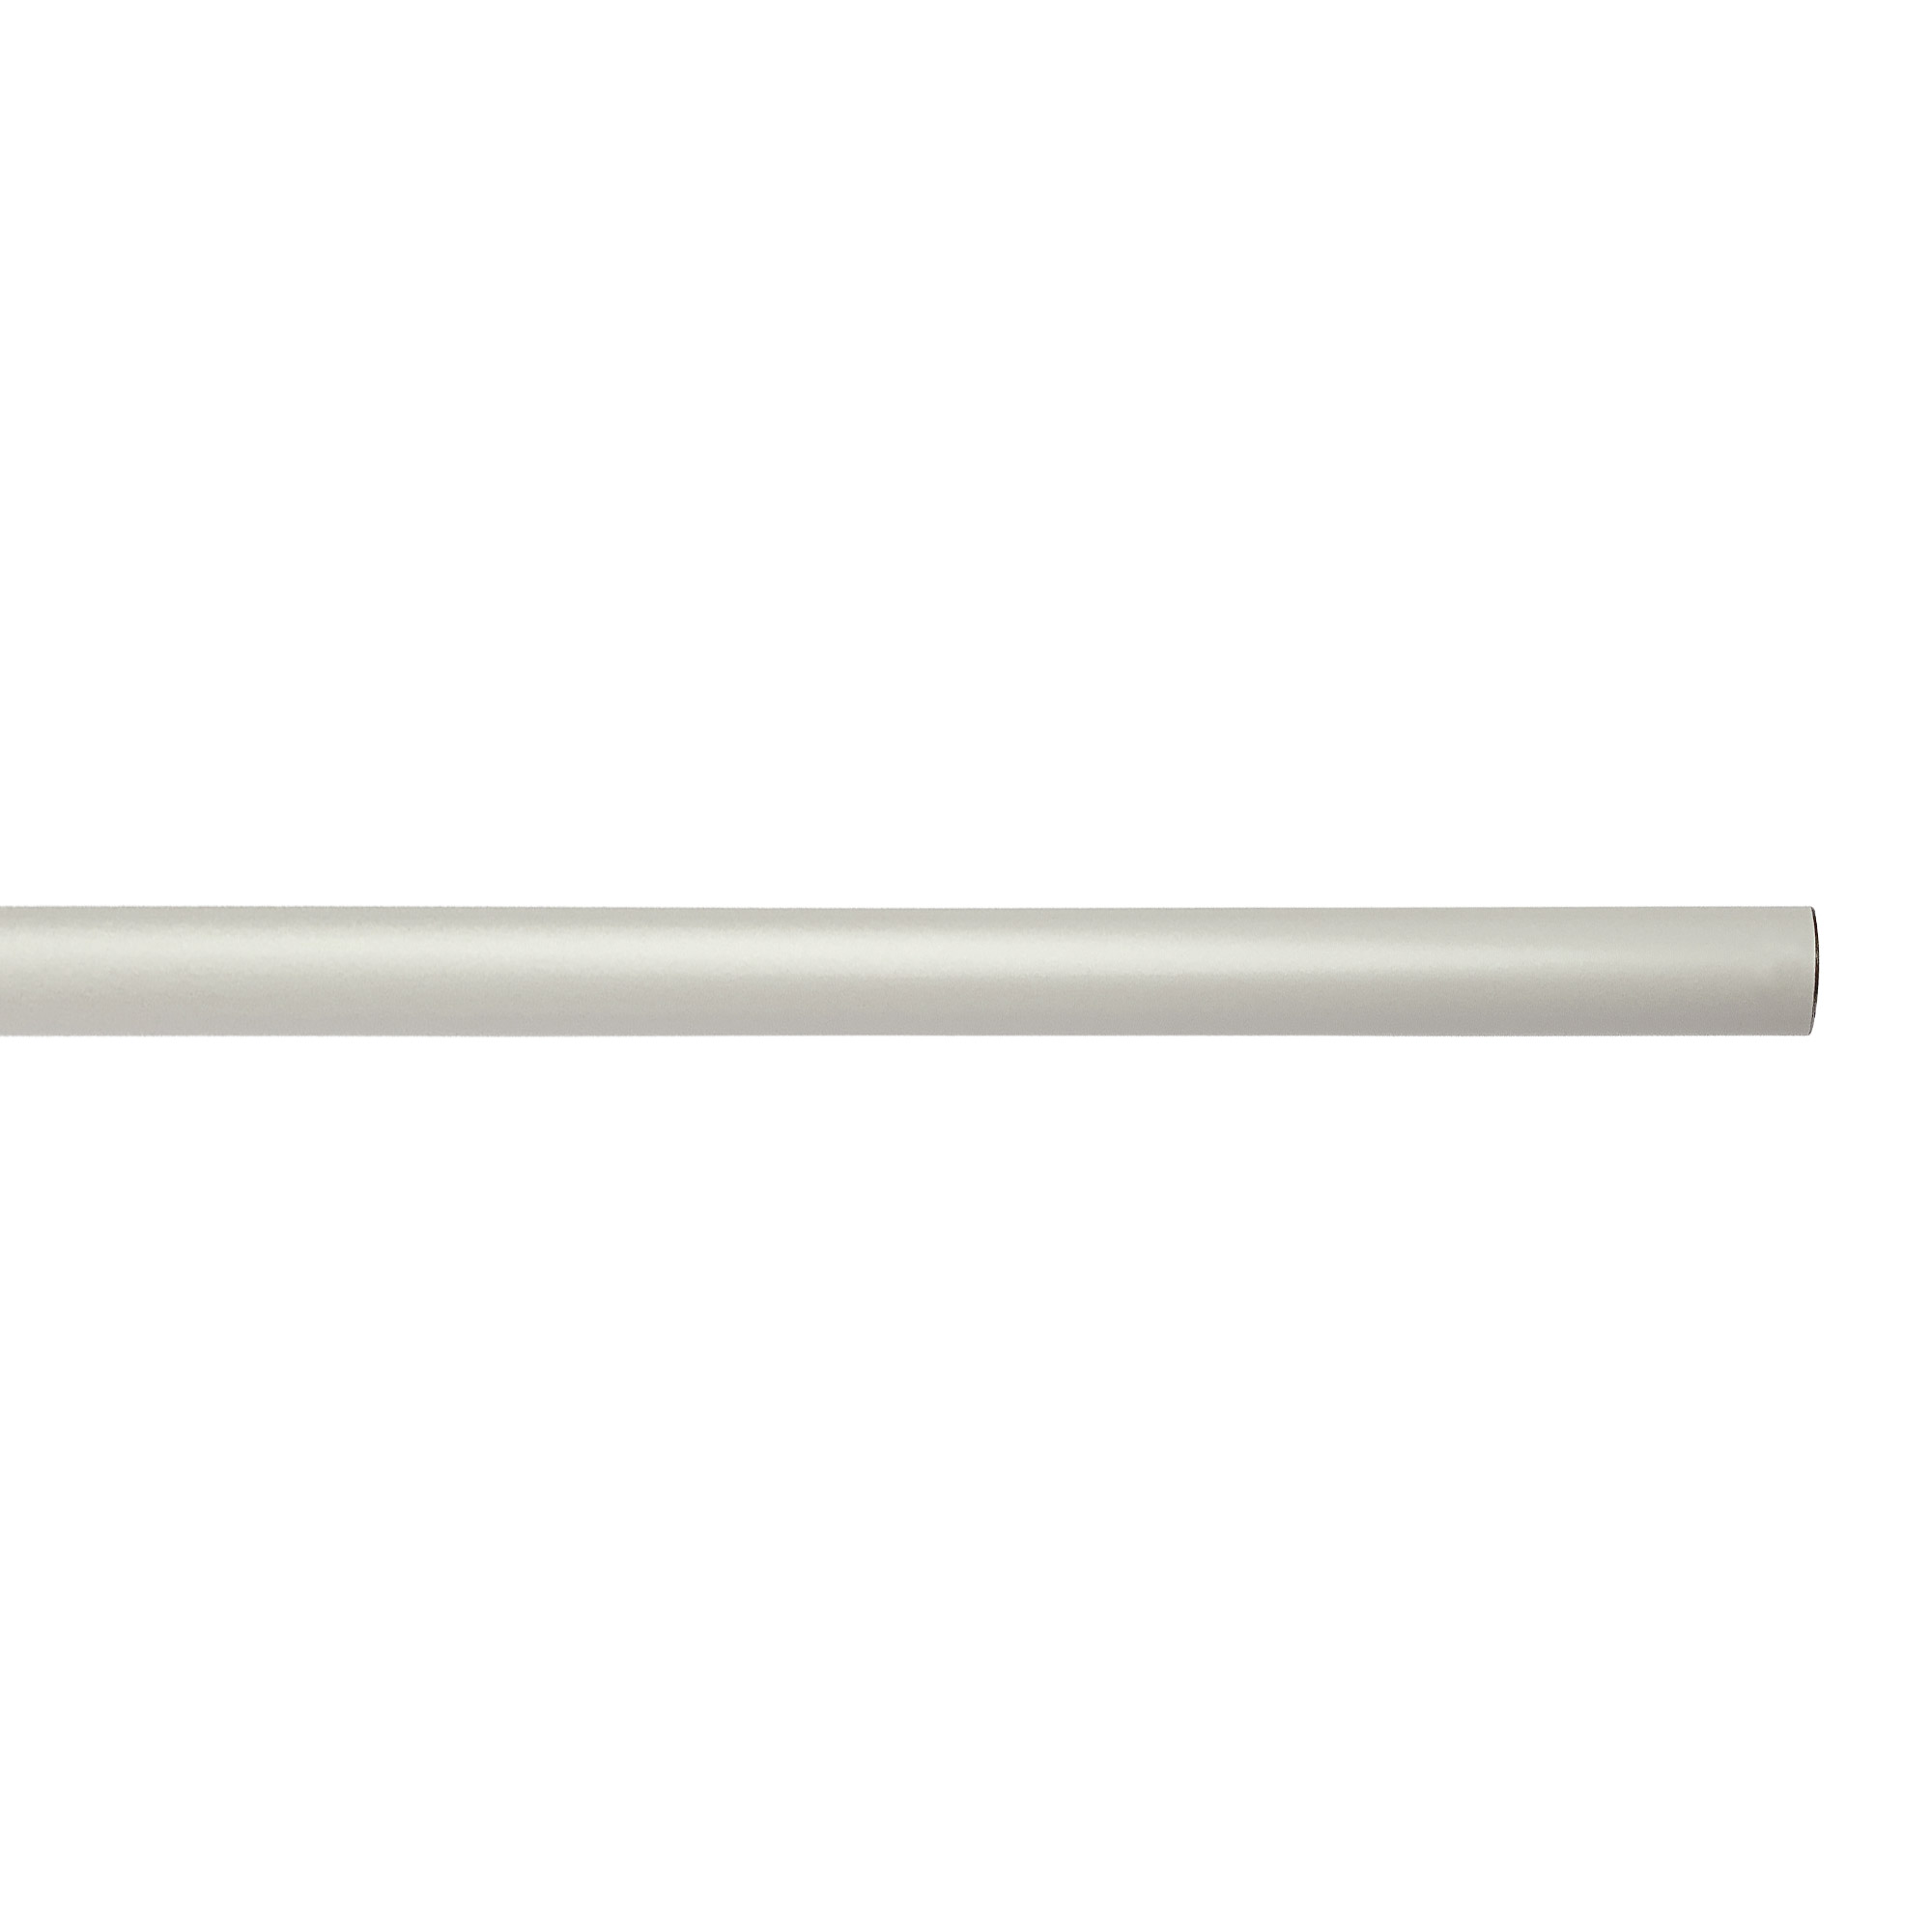 アイアンハンガーパイプ E型-棚下吊タイプ H100 ホワイト PS-HB008-58-G141 水平パイプは3サイズから2本、それぞれお好きな長さを選択可能です